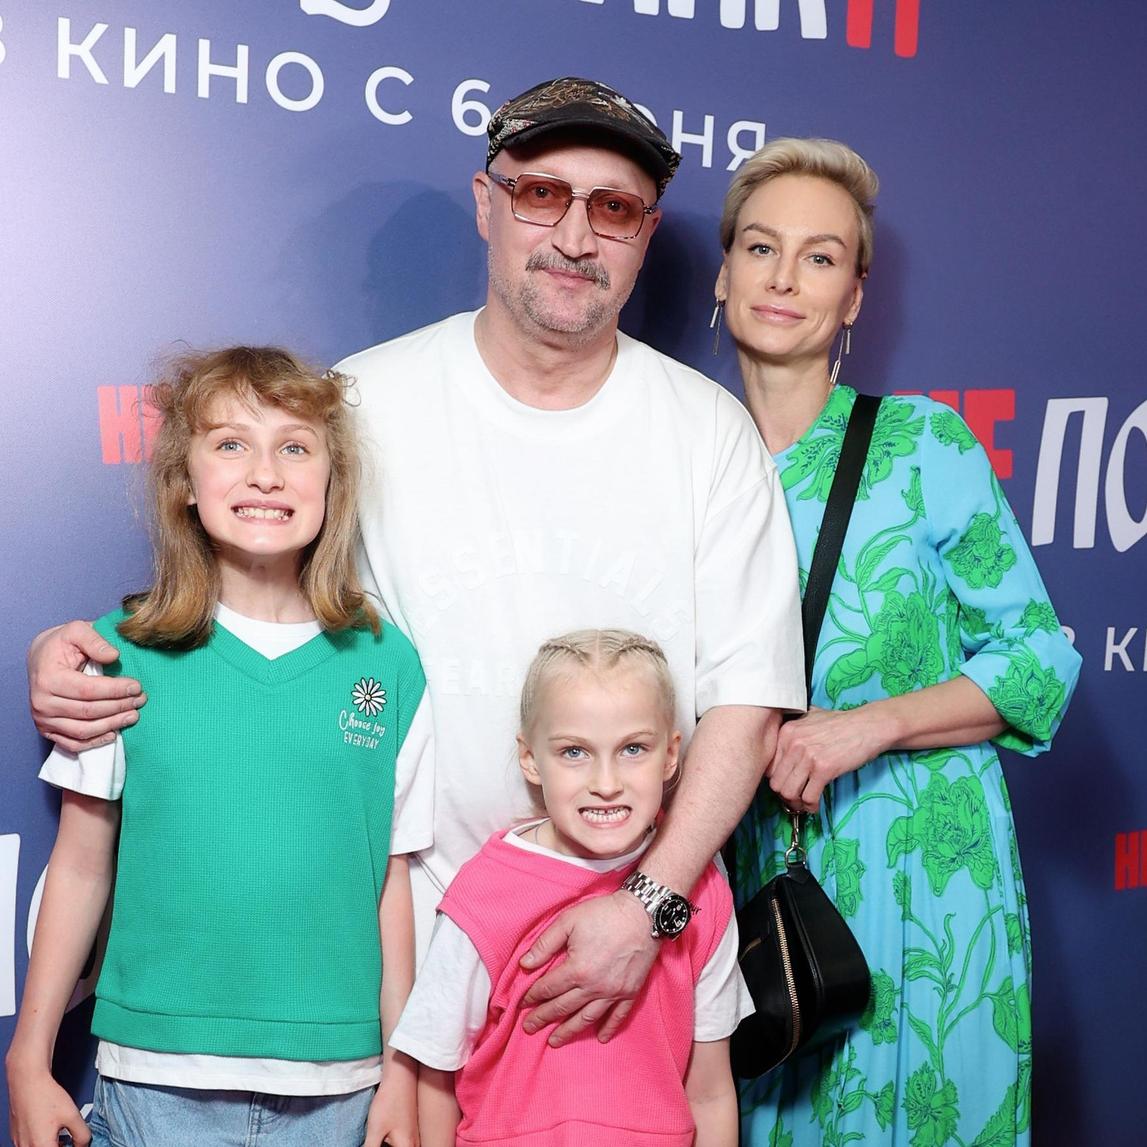 Набравший вес Куценко пришел с семьей, а Порошина — с дочерью от него: премьера фильма «Непослушники»